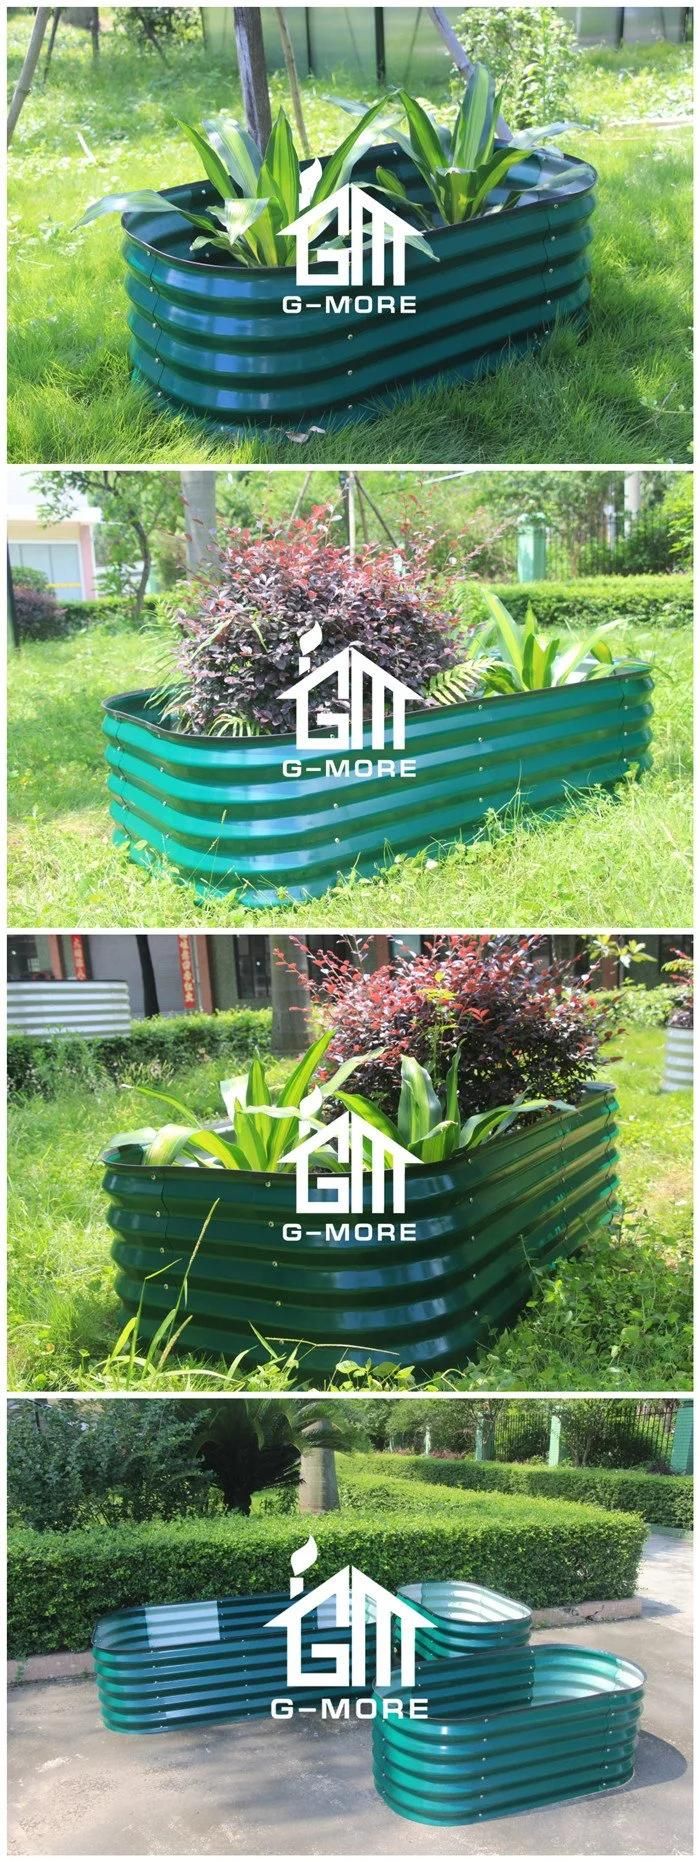 44cm Height Galvanized Steel Raised Garden Beds Grow Vegetable Gardening Beds